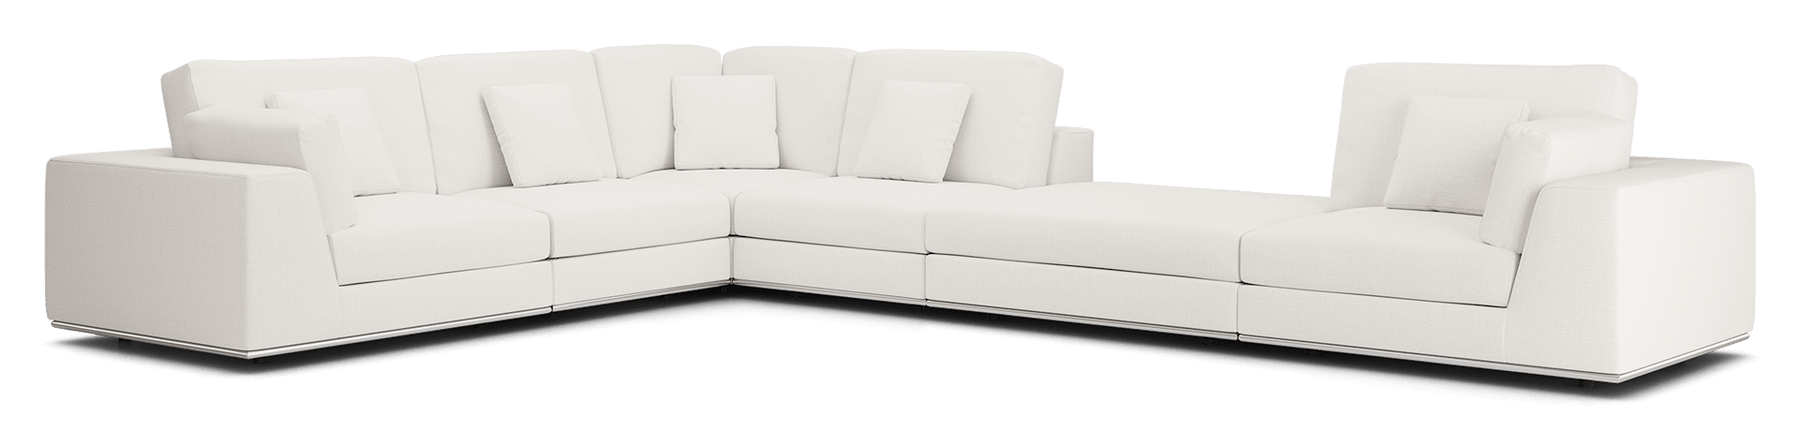 Perry Modular Sofa 03